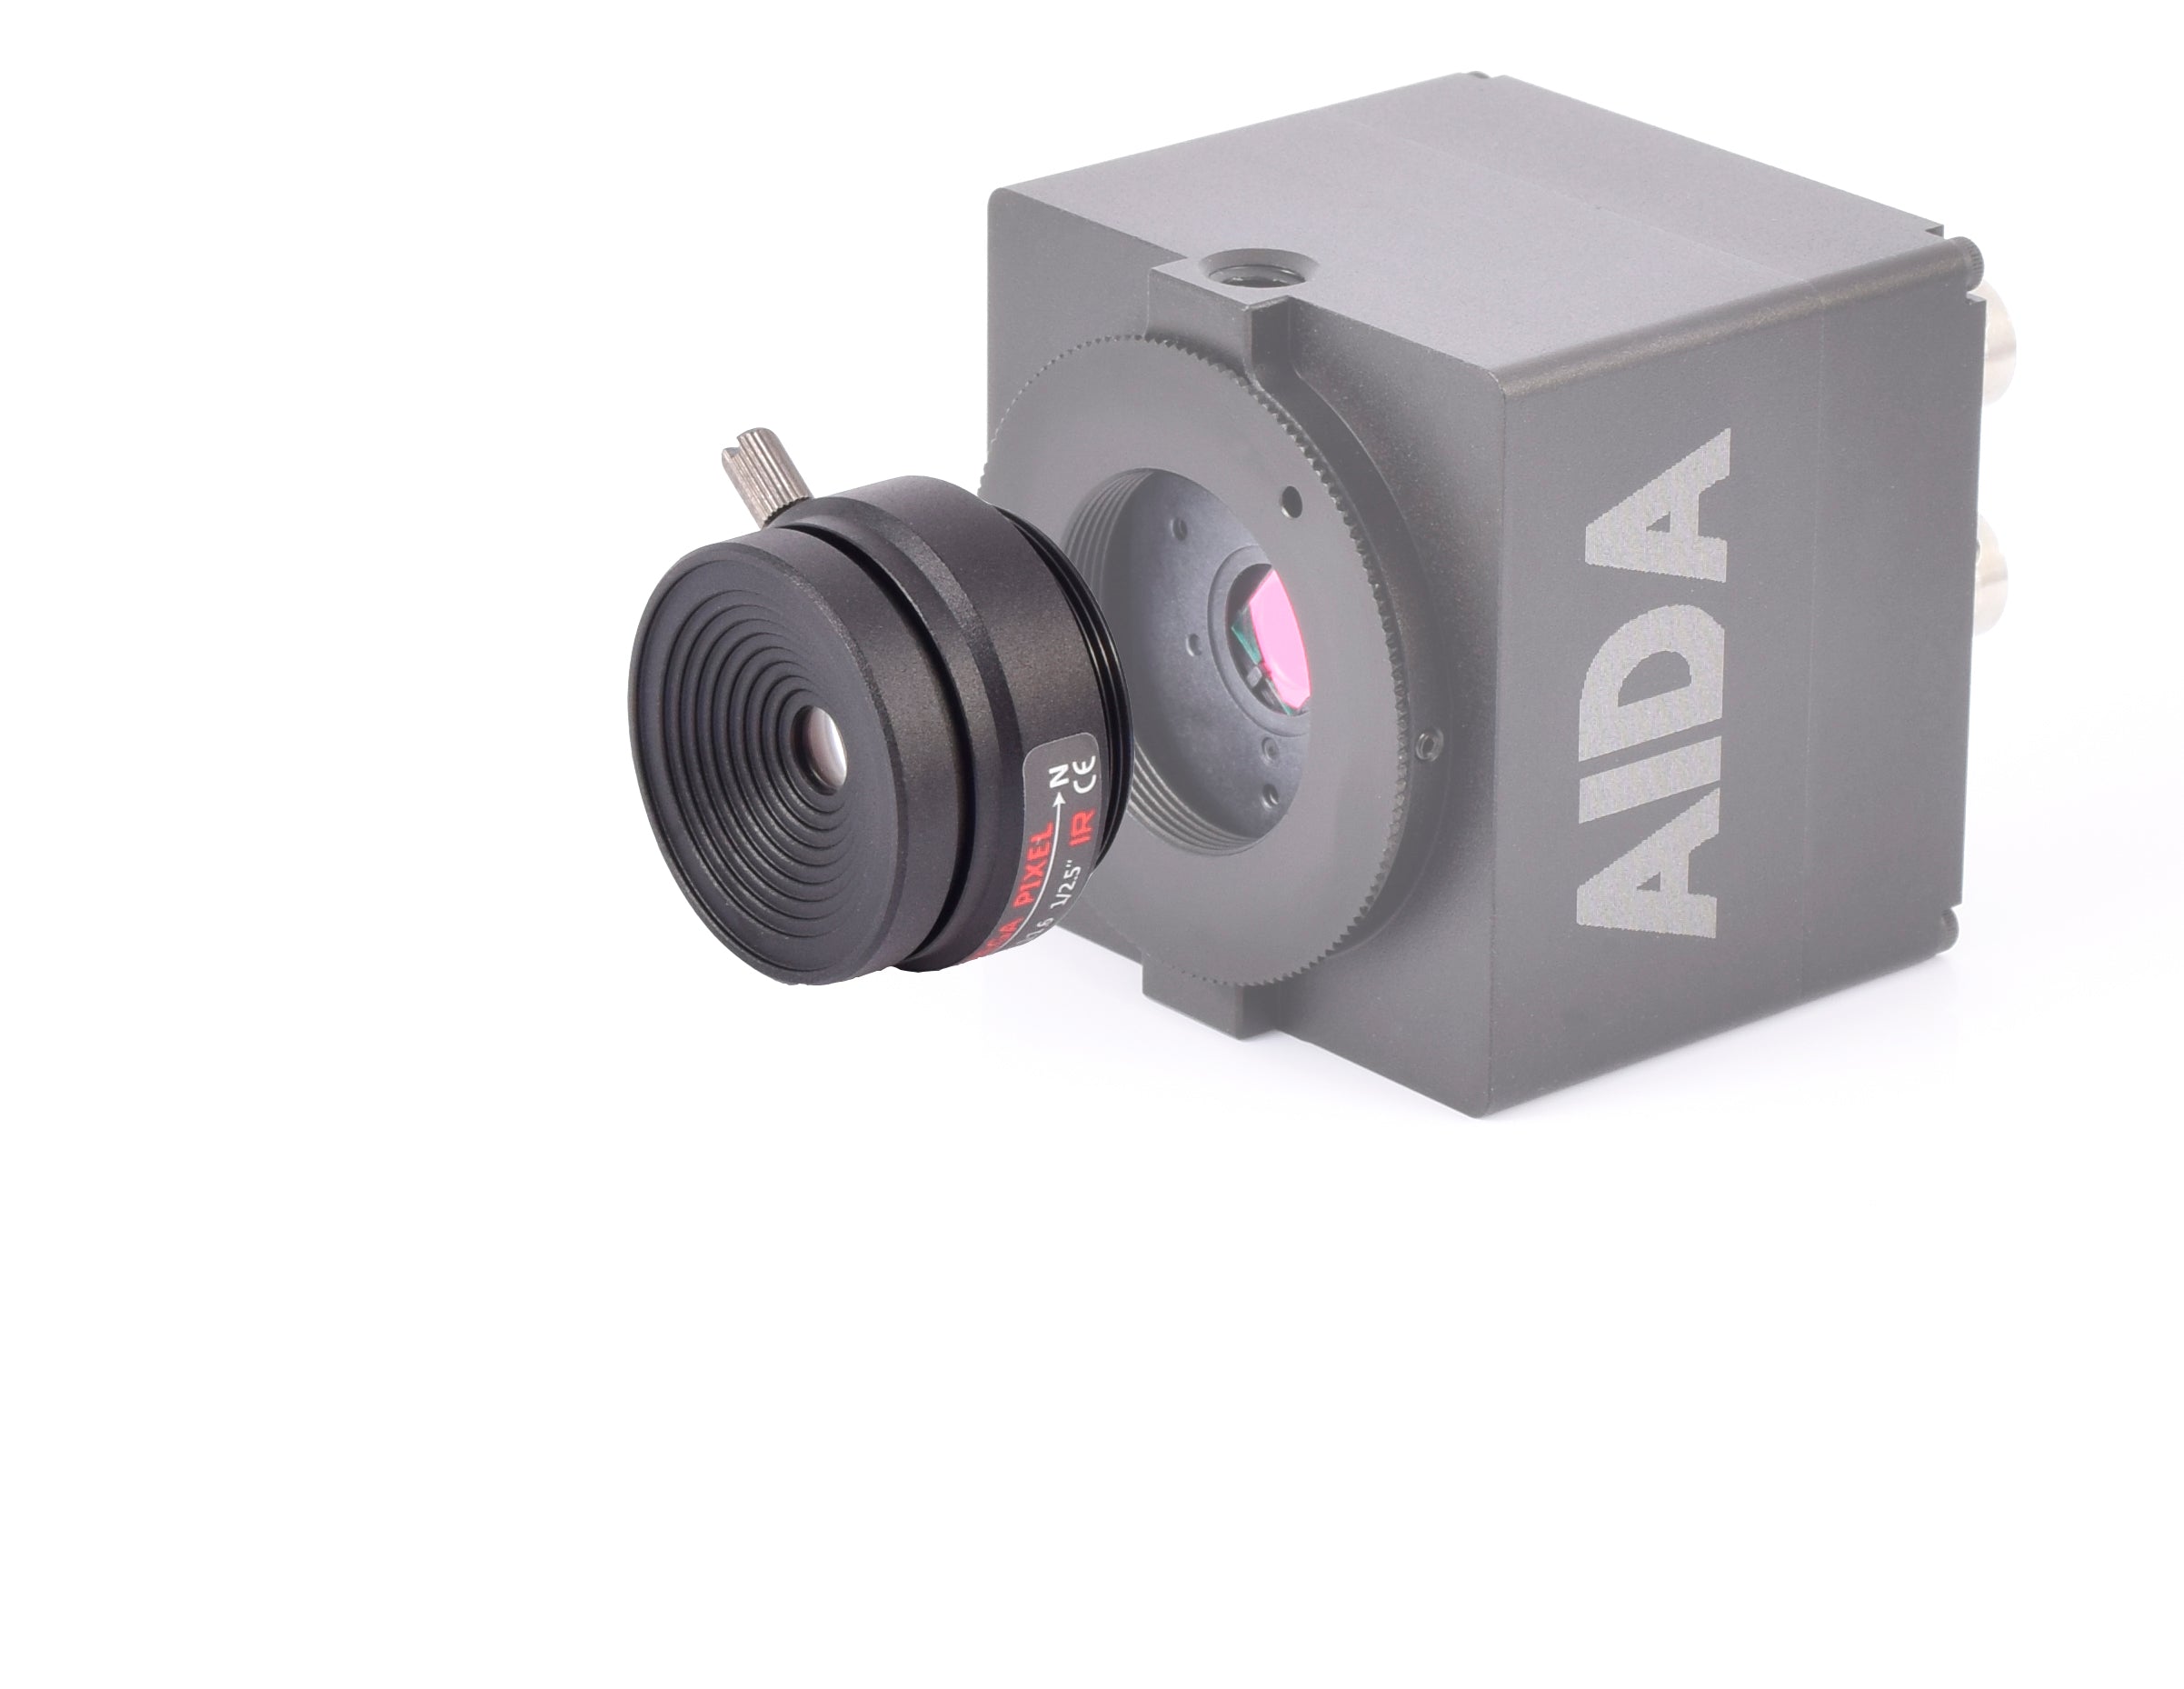 AIDA Imaging CS Mount 12mm Fixed Focal Mega-Pixel Lens